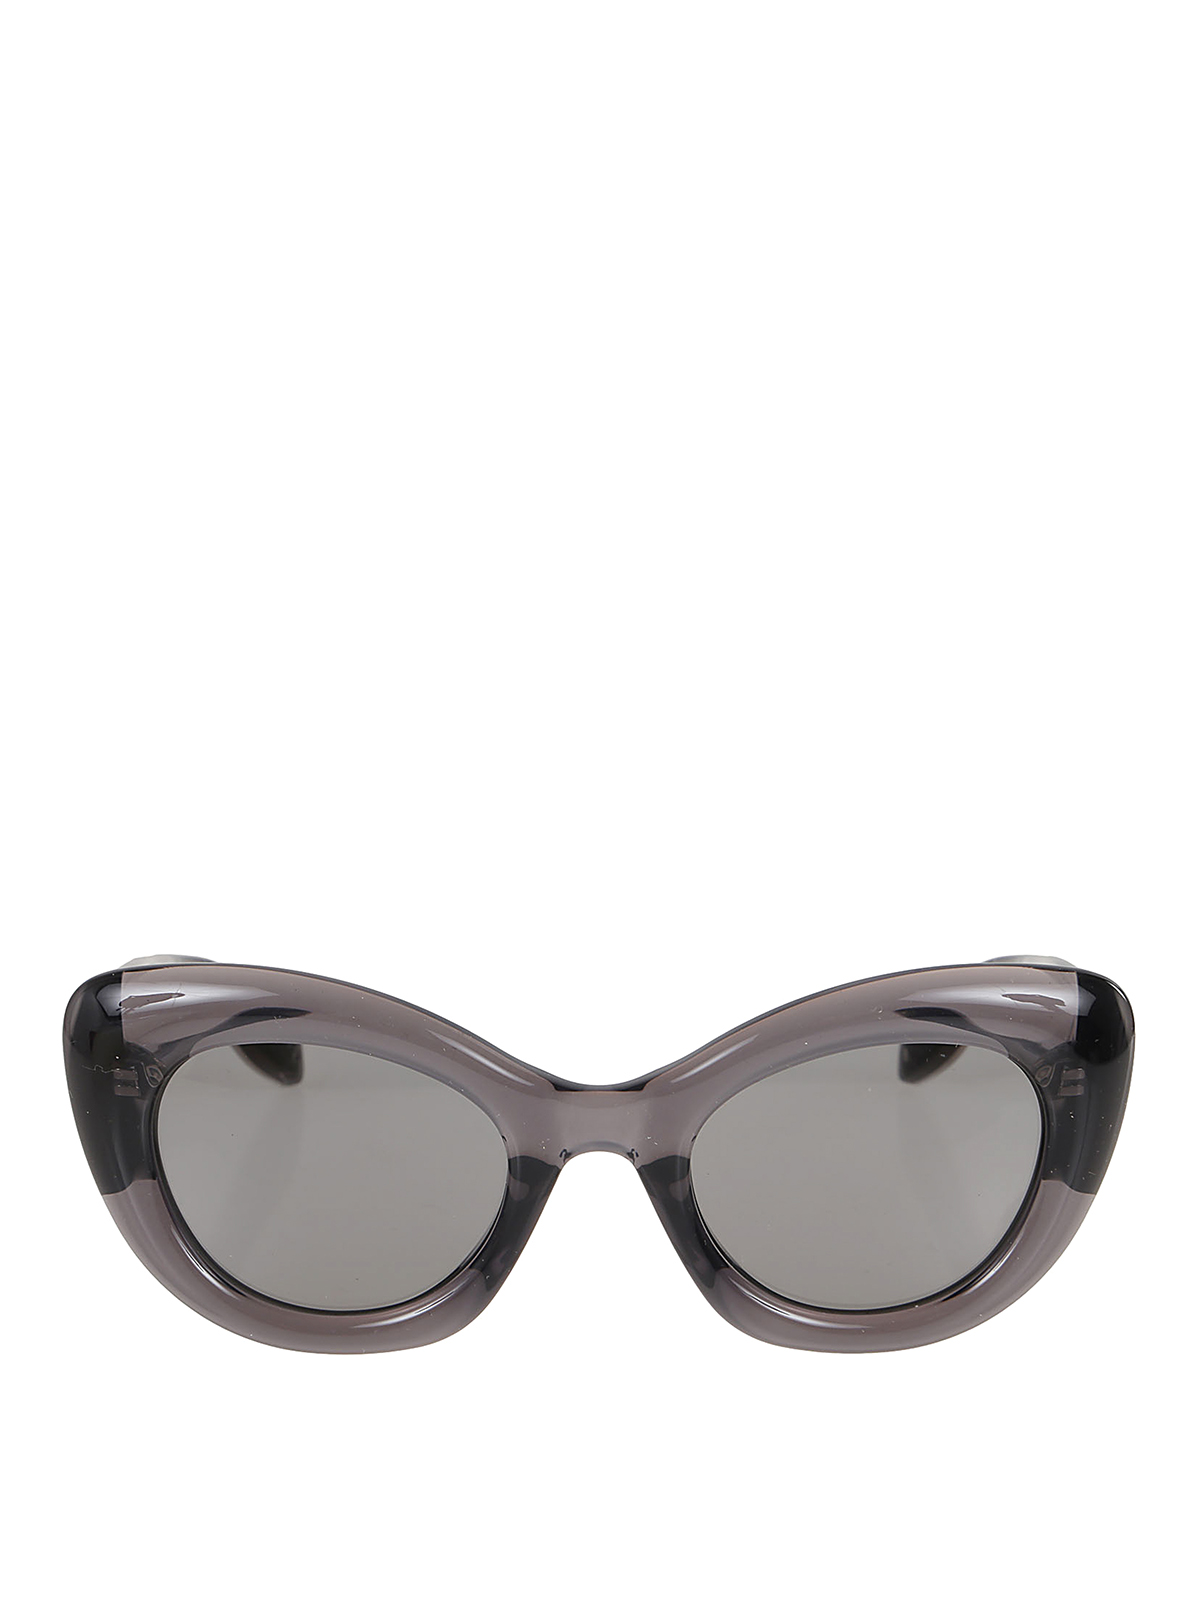 Alexander Mcqueen Sunglasses In Grey